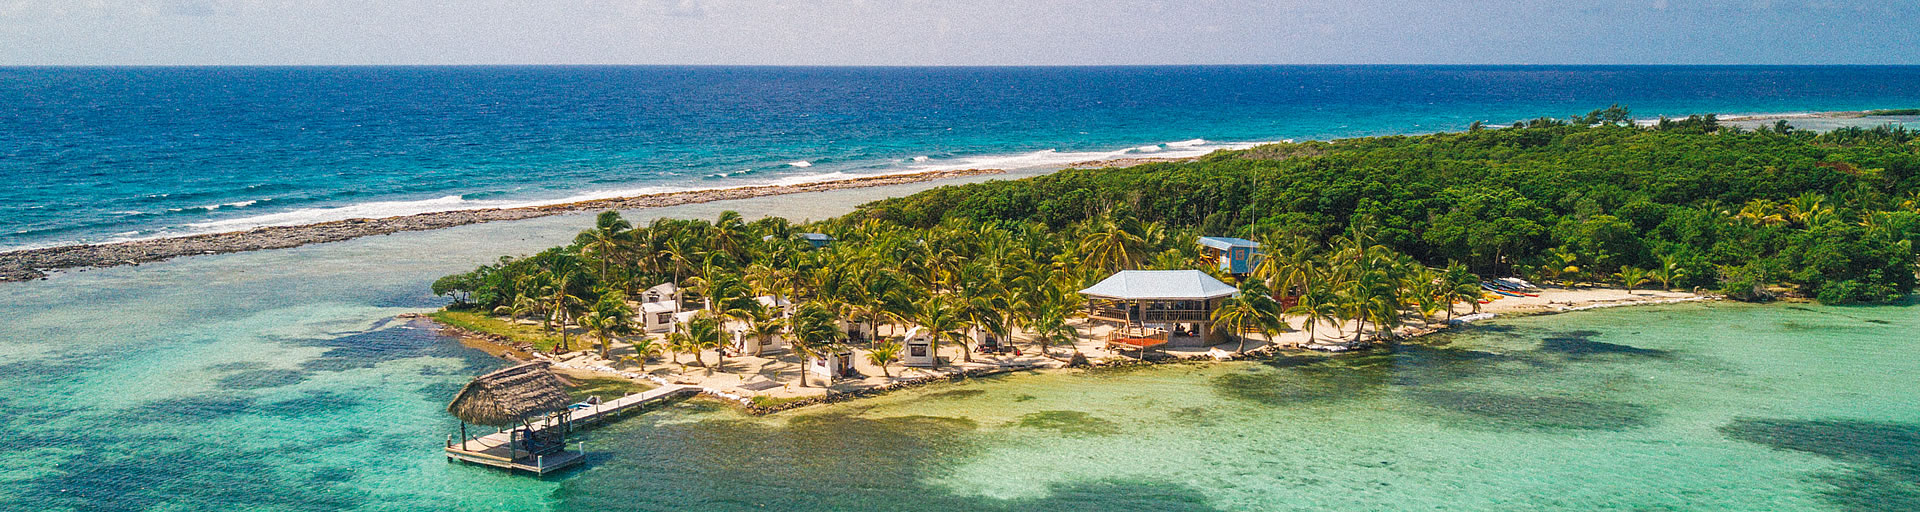 Glover's Reef Basecamp, Southwest Caye, Belize